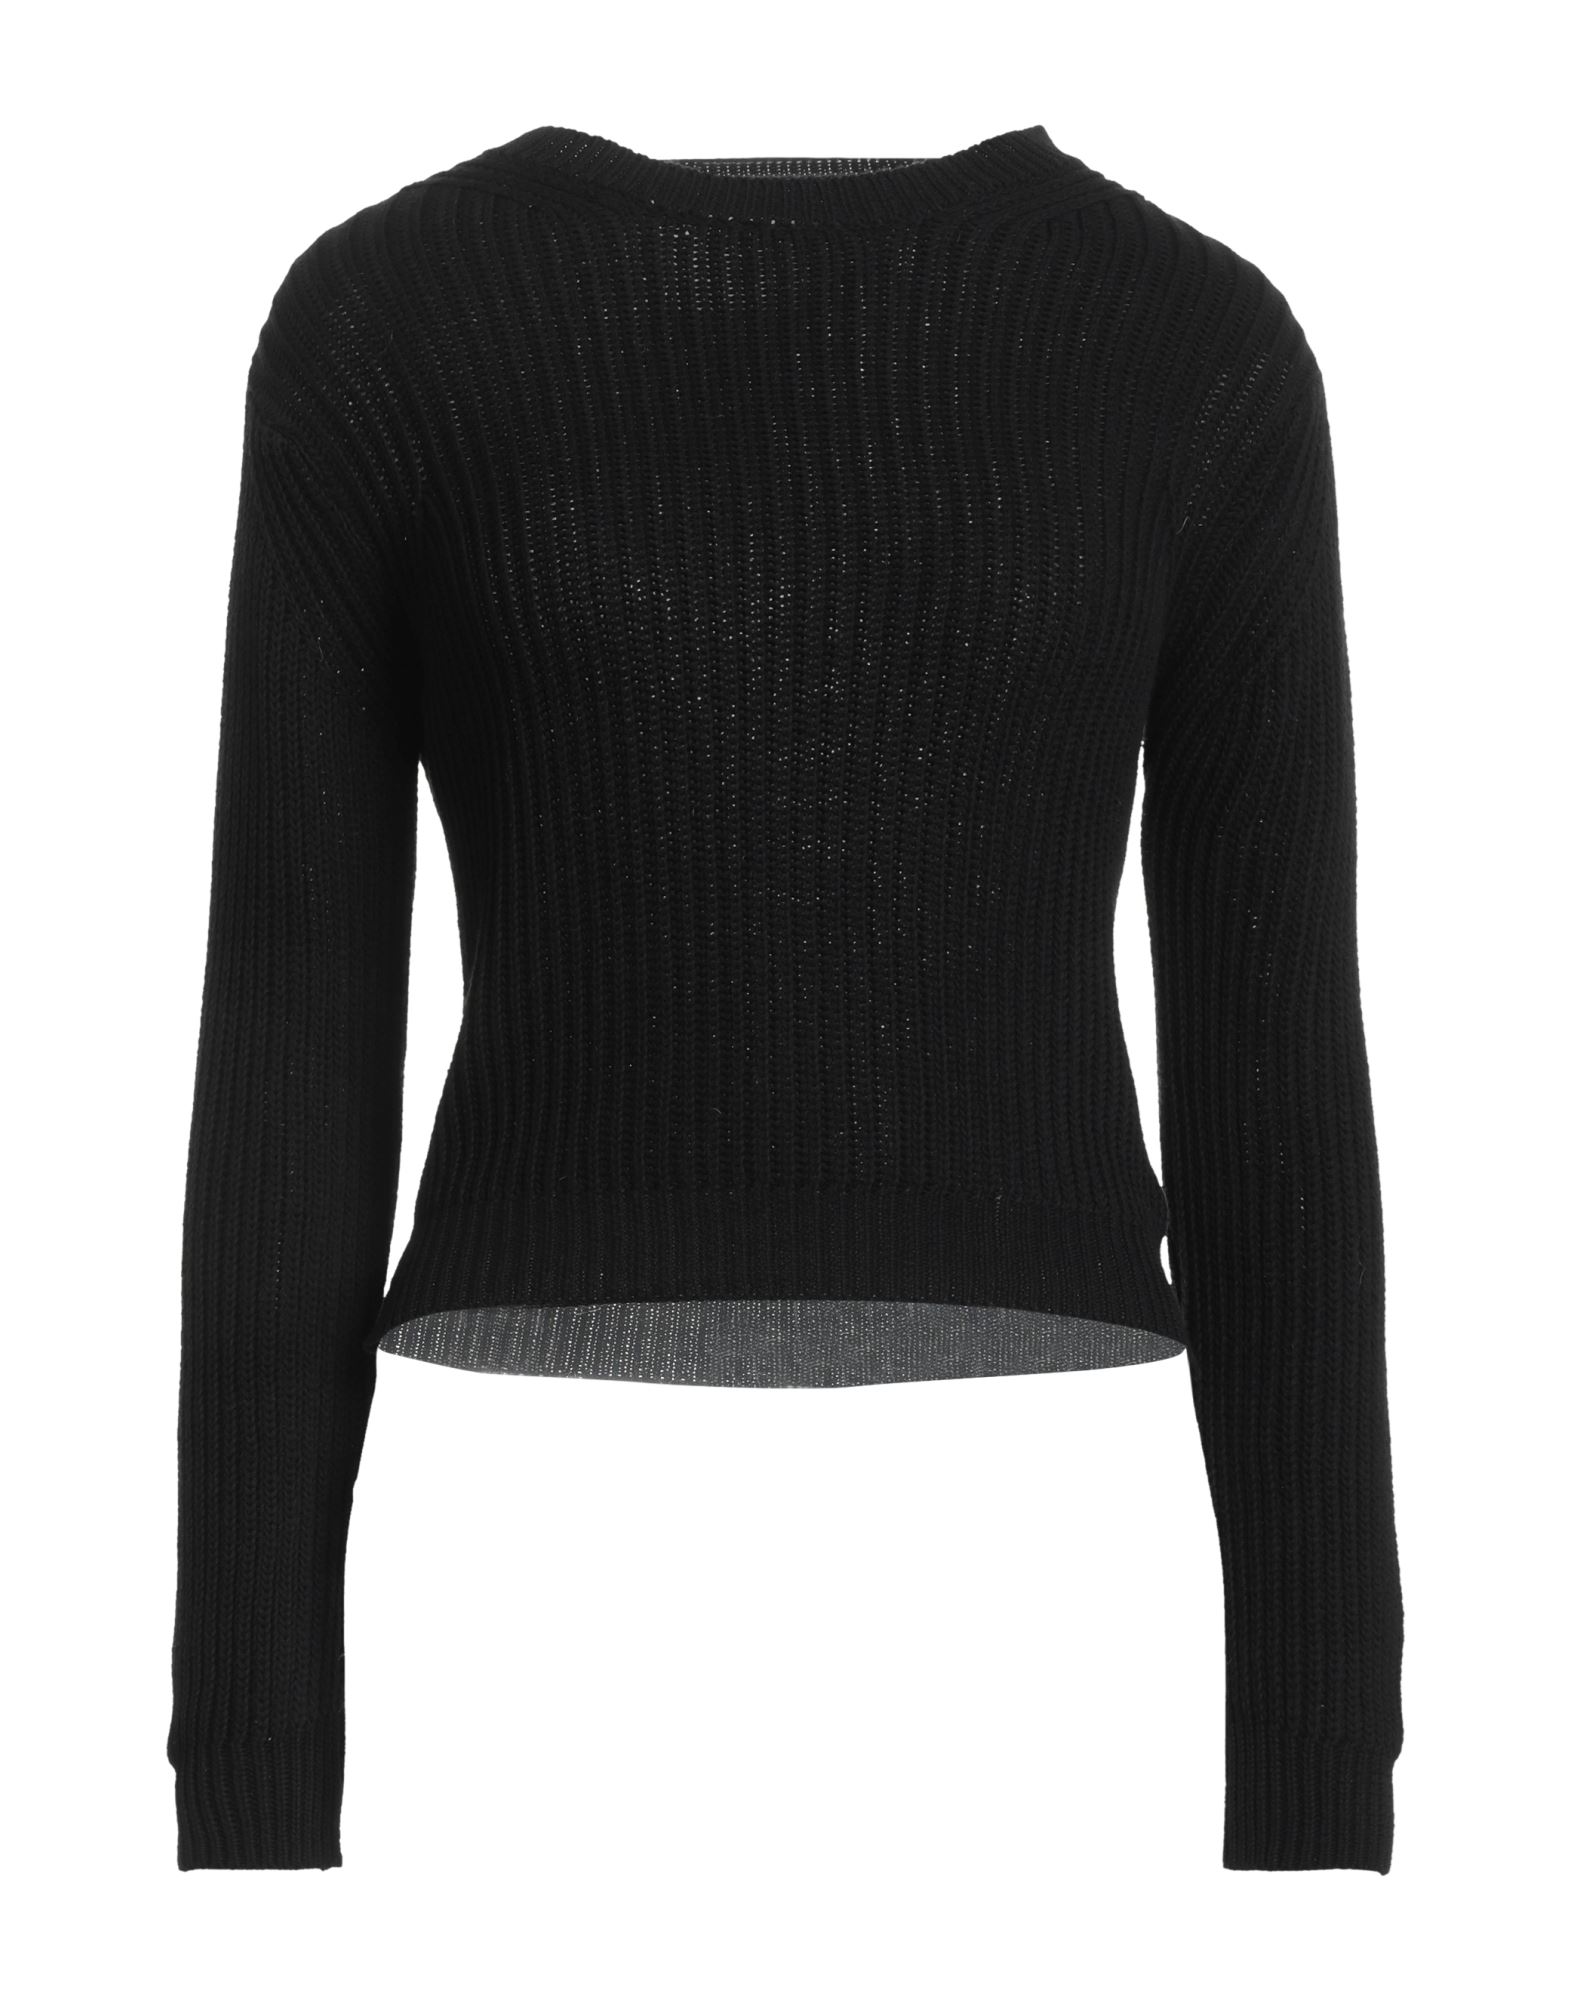 Croche Sweaters In Black